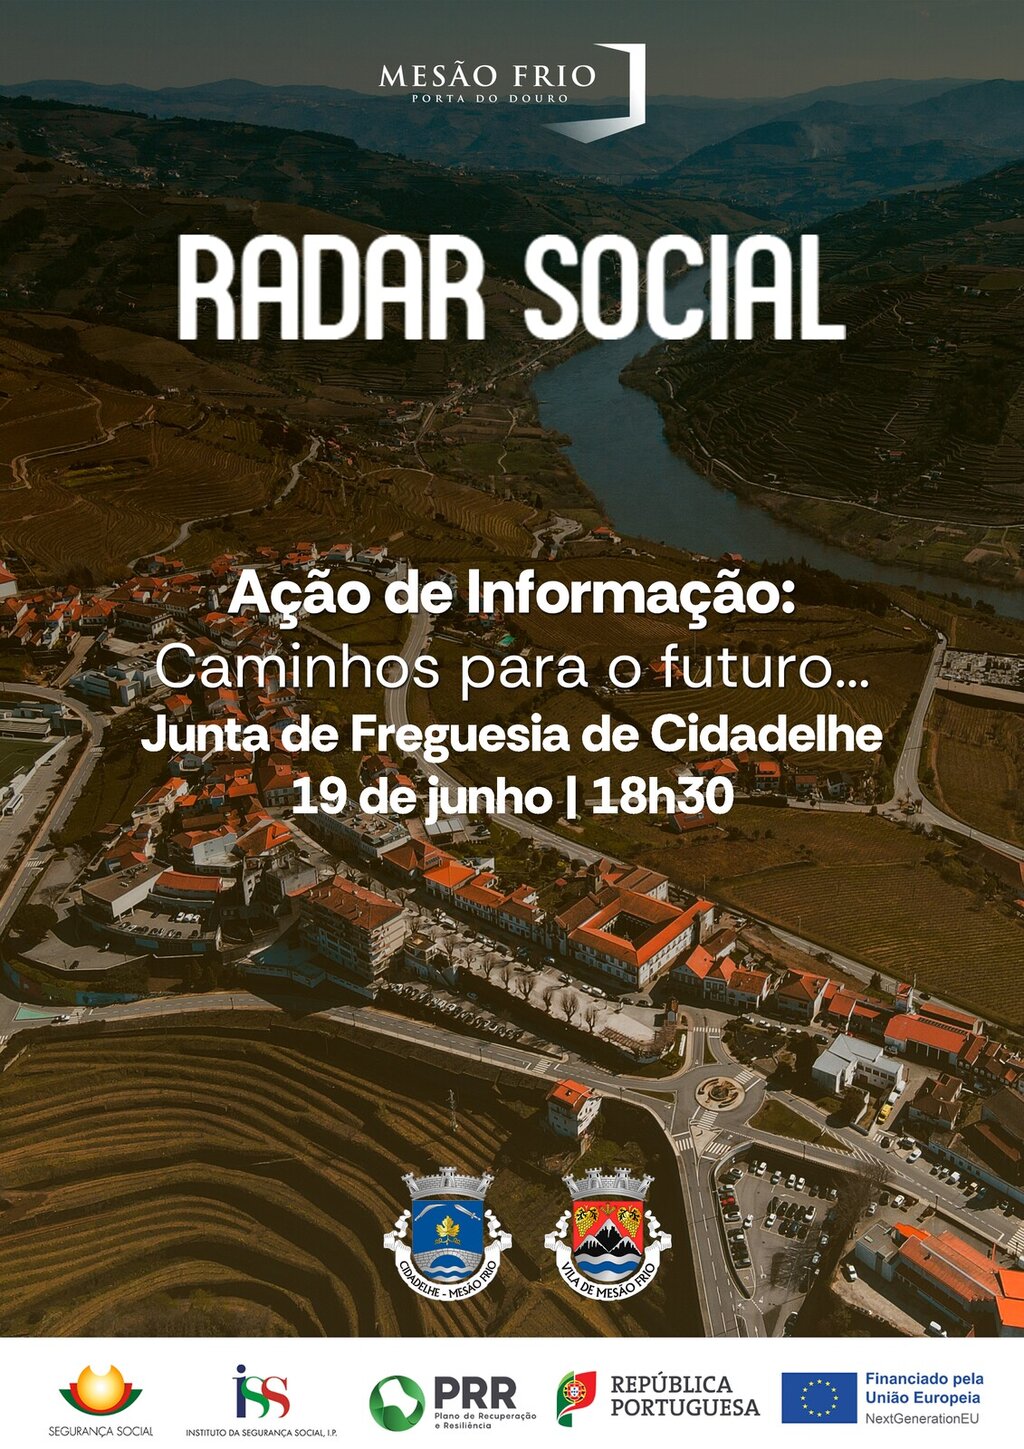 Radar Social: Ações de Informação nas Freguesias